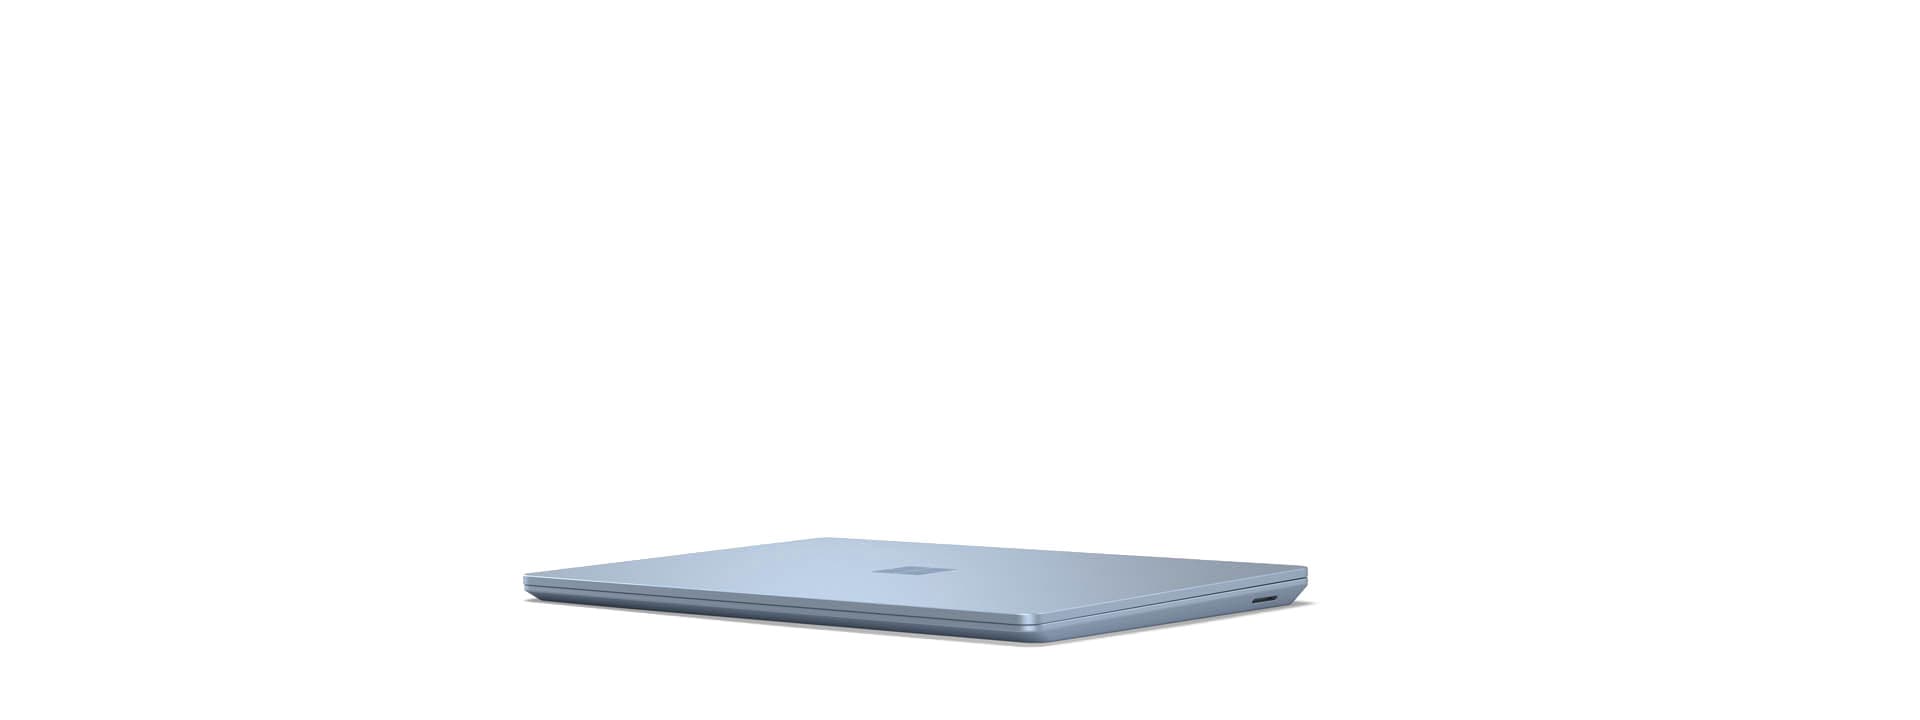 Ein geschlossenes Surface Laptop Go wird angezeigt.